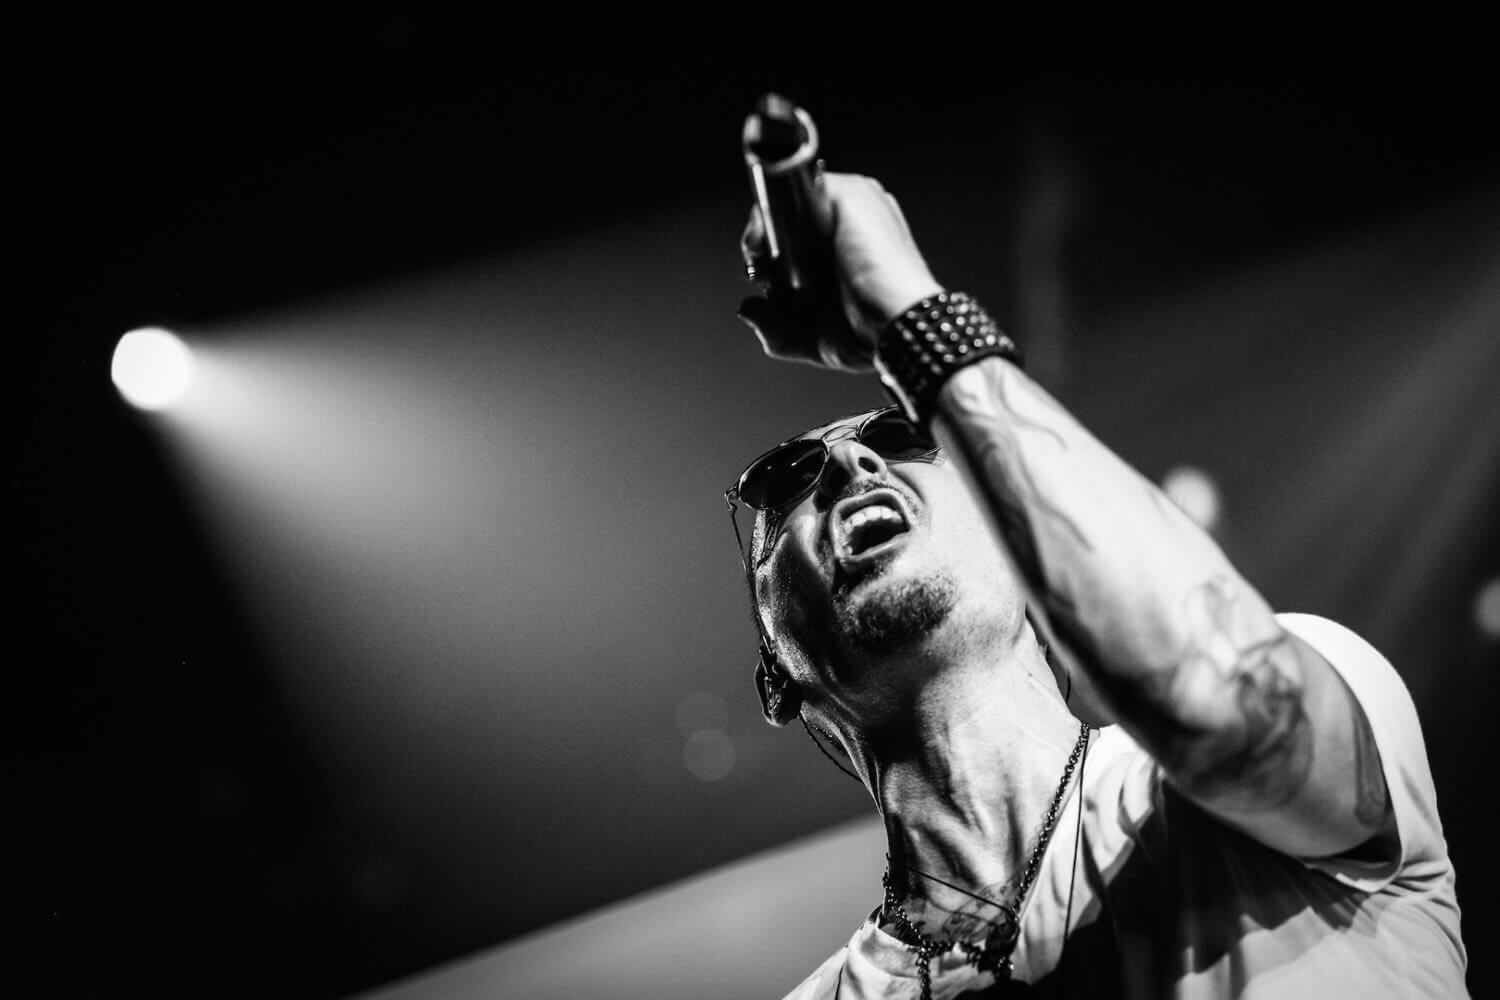 Chester Bennington Linkin Park nakręcili klip i "Carpool Karaoke" przed śmiercią wokalisty